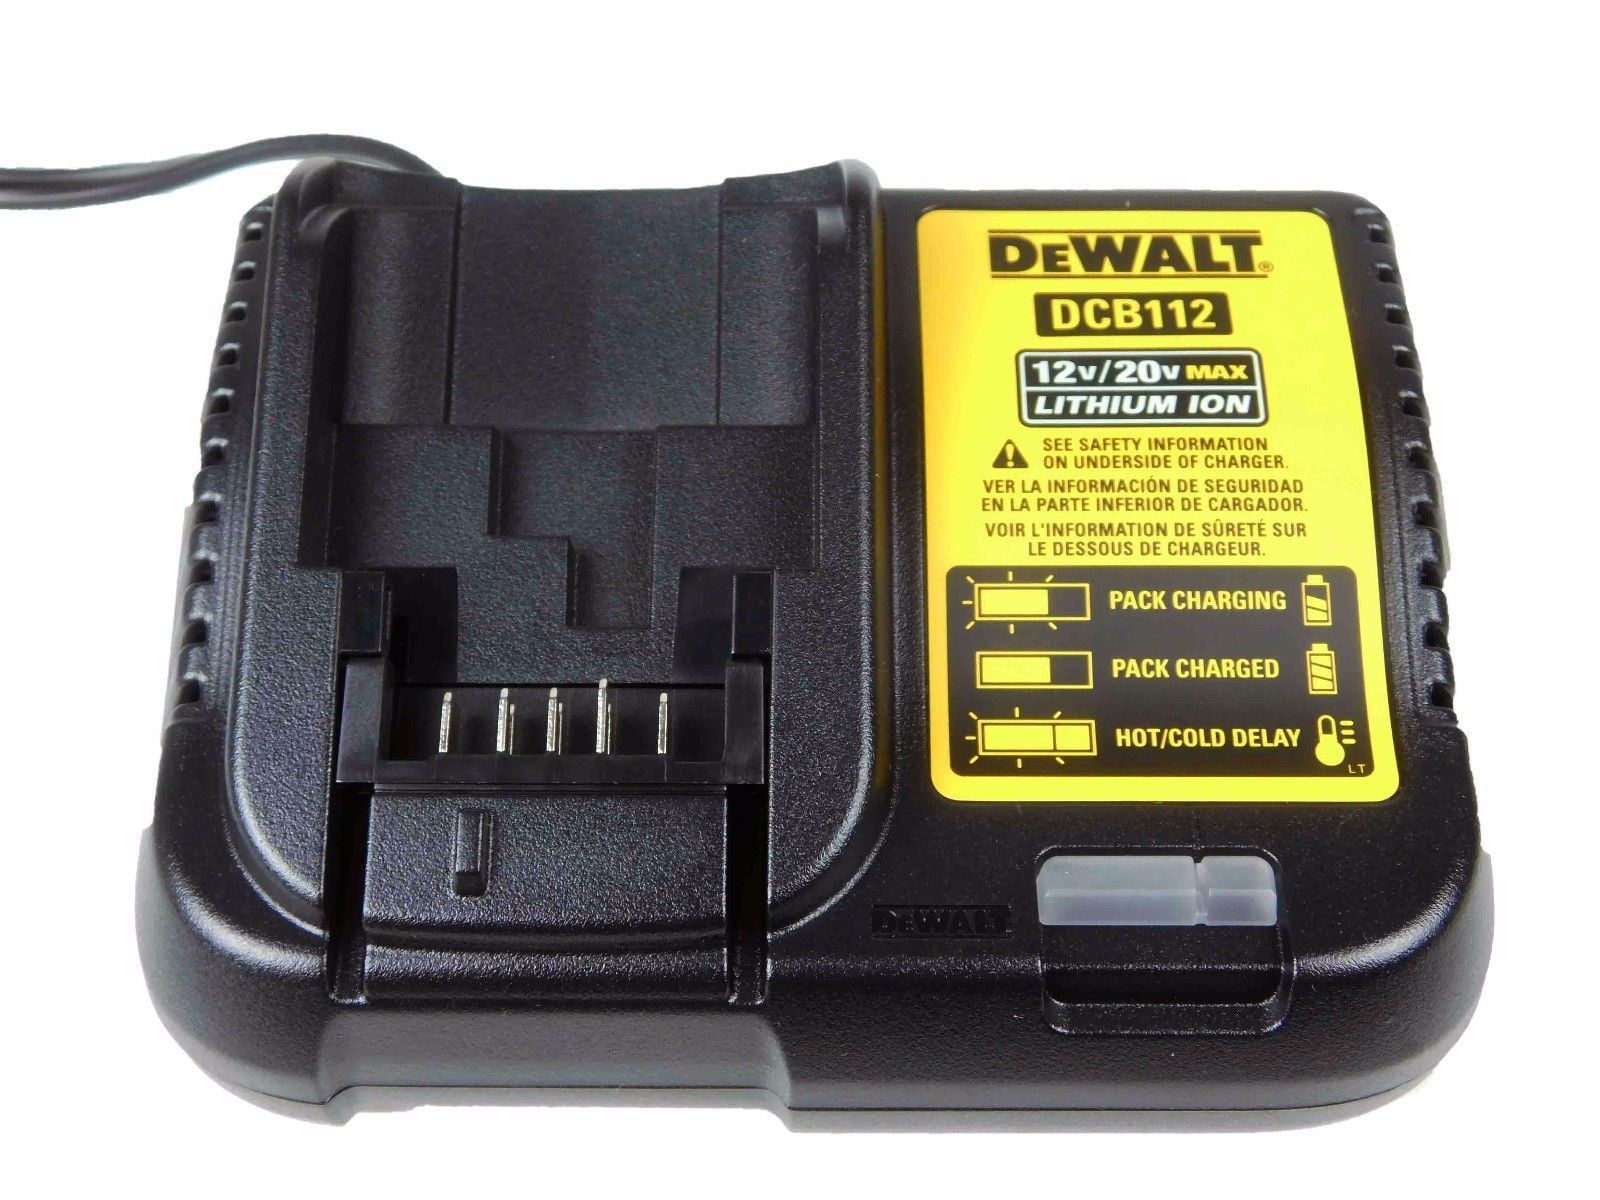 Kirurgi Detektiv kontroversiel Dewalt 20V DCB112 Charger and 2 DCB203 Batteries - Walmart.com